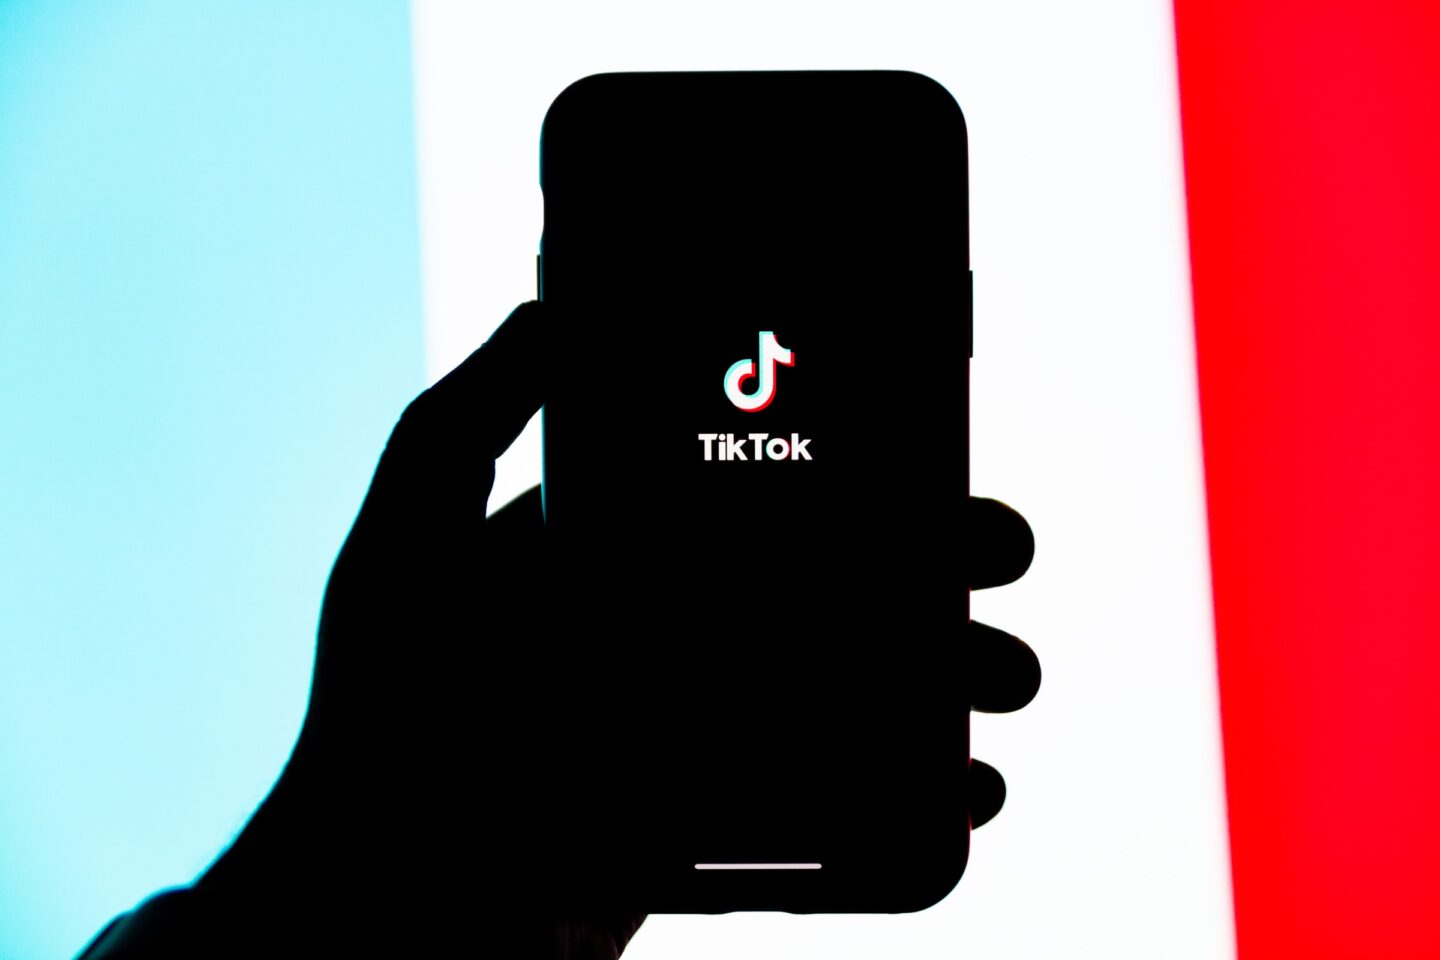 Kup video na TikToku za 500 tys. dolarów. Na co pozwala nam technologia tokenów NFT?